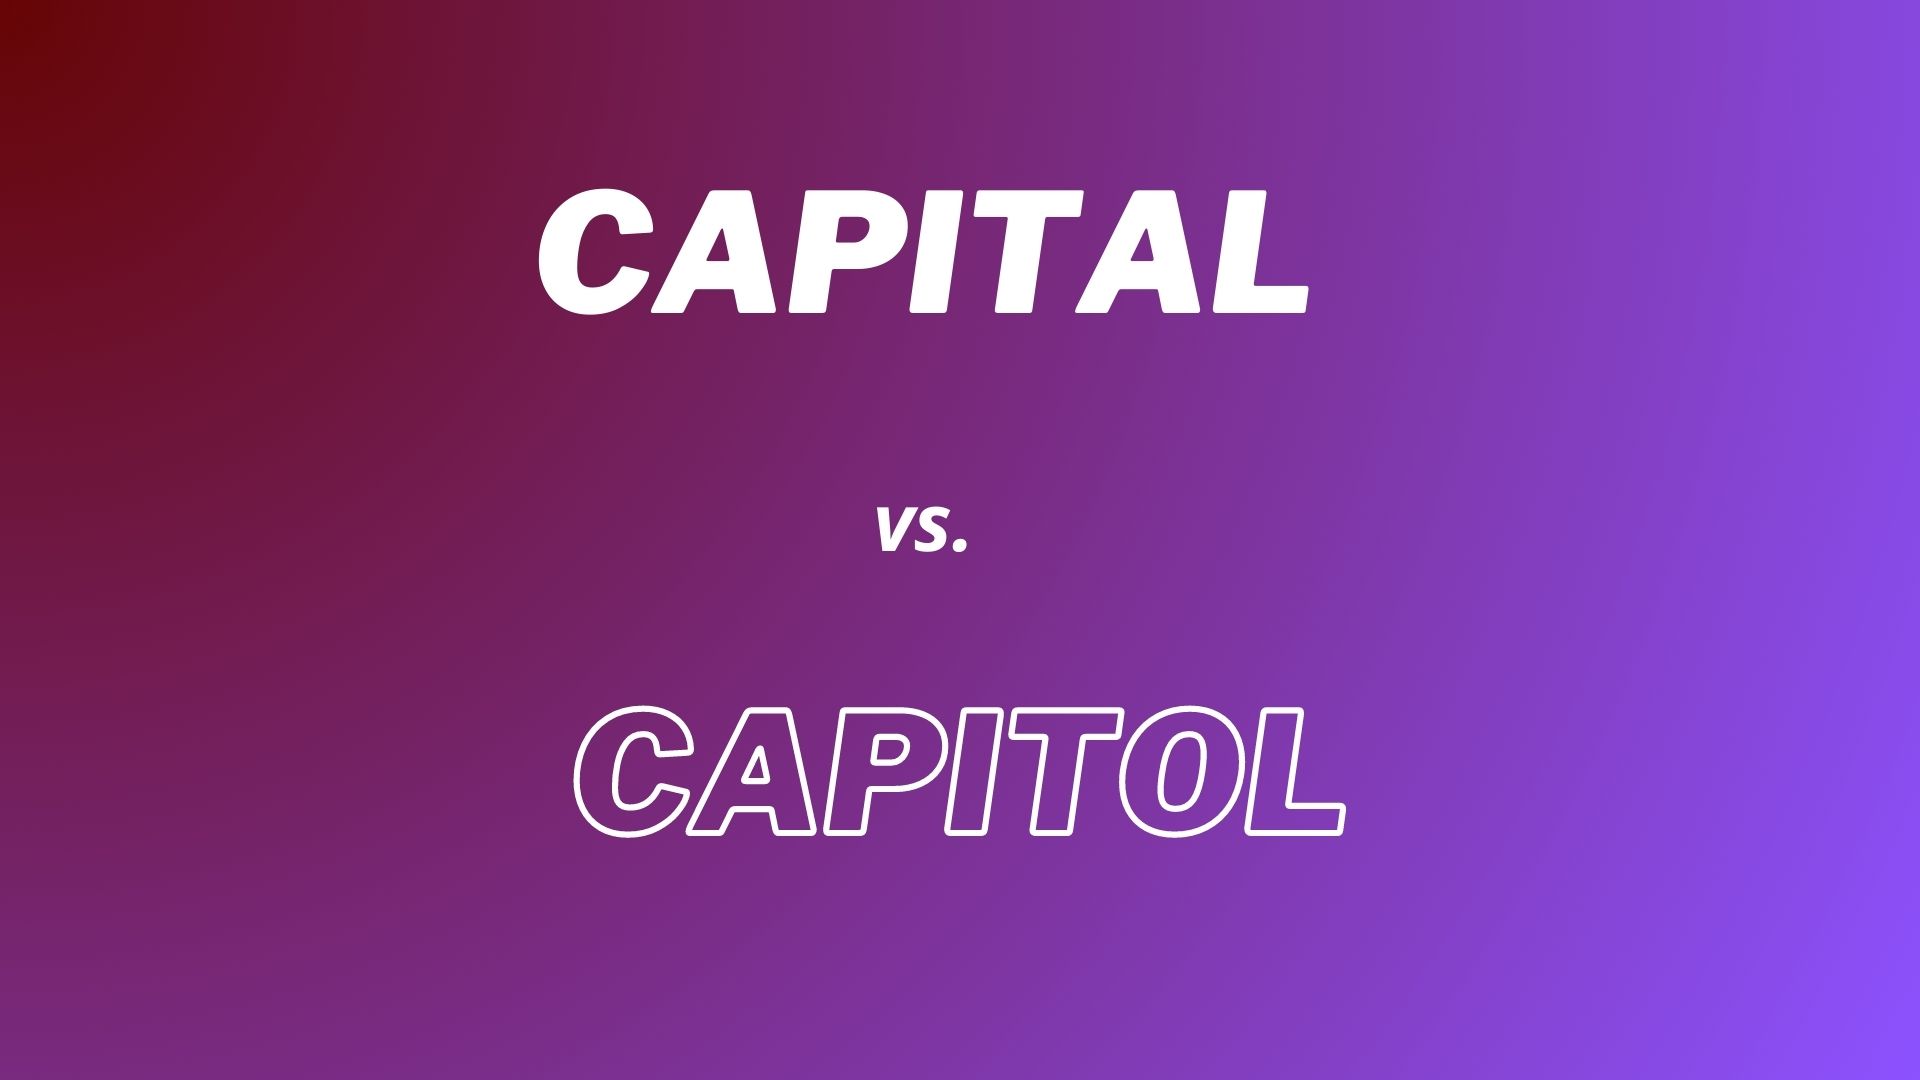 Explicando la diferencia entre las palabras "Capital" y "Capitol"